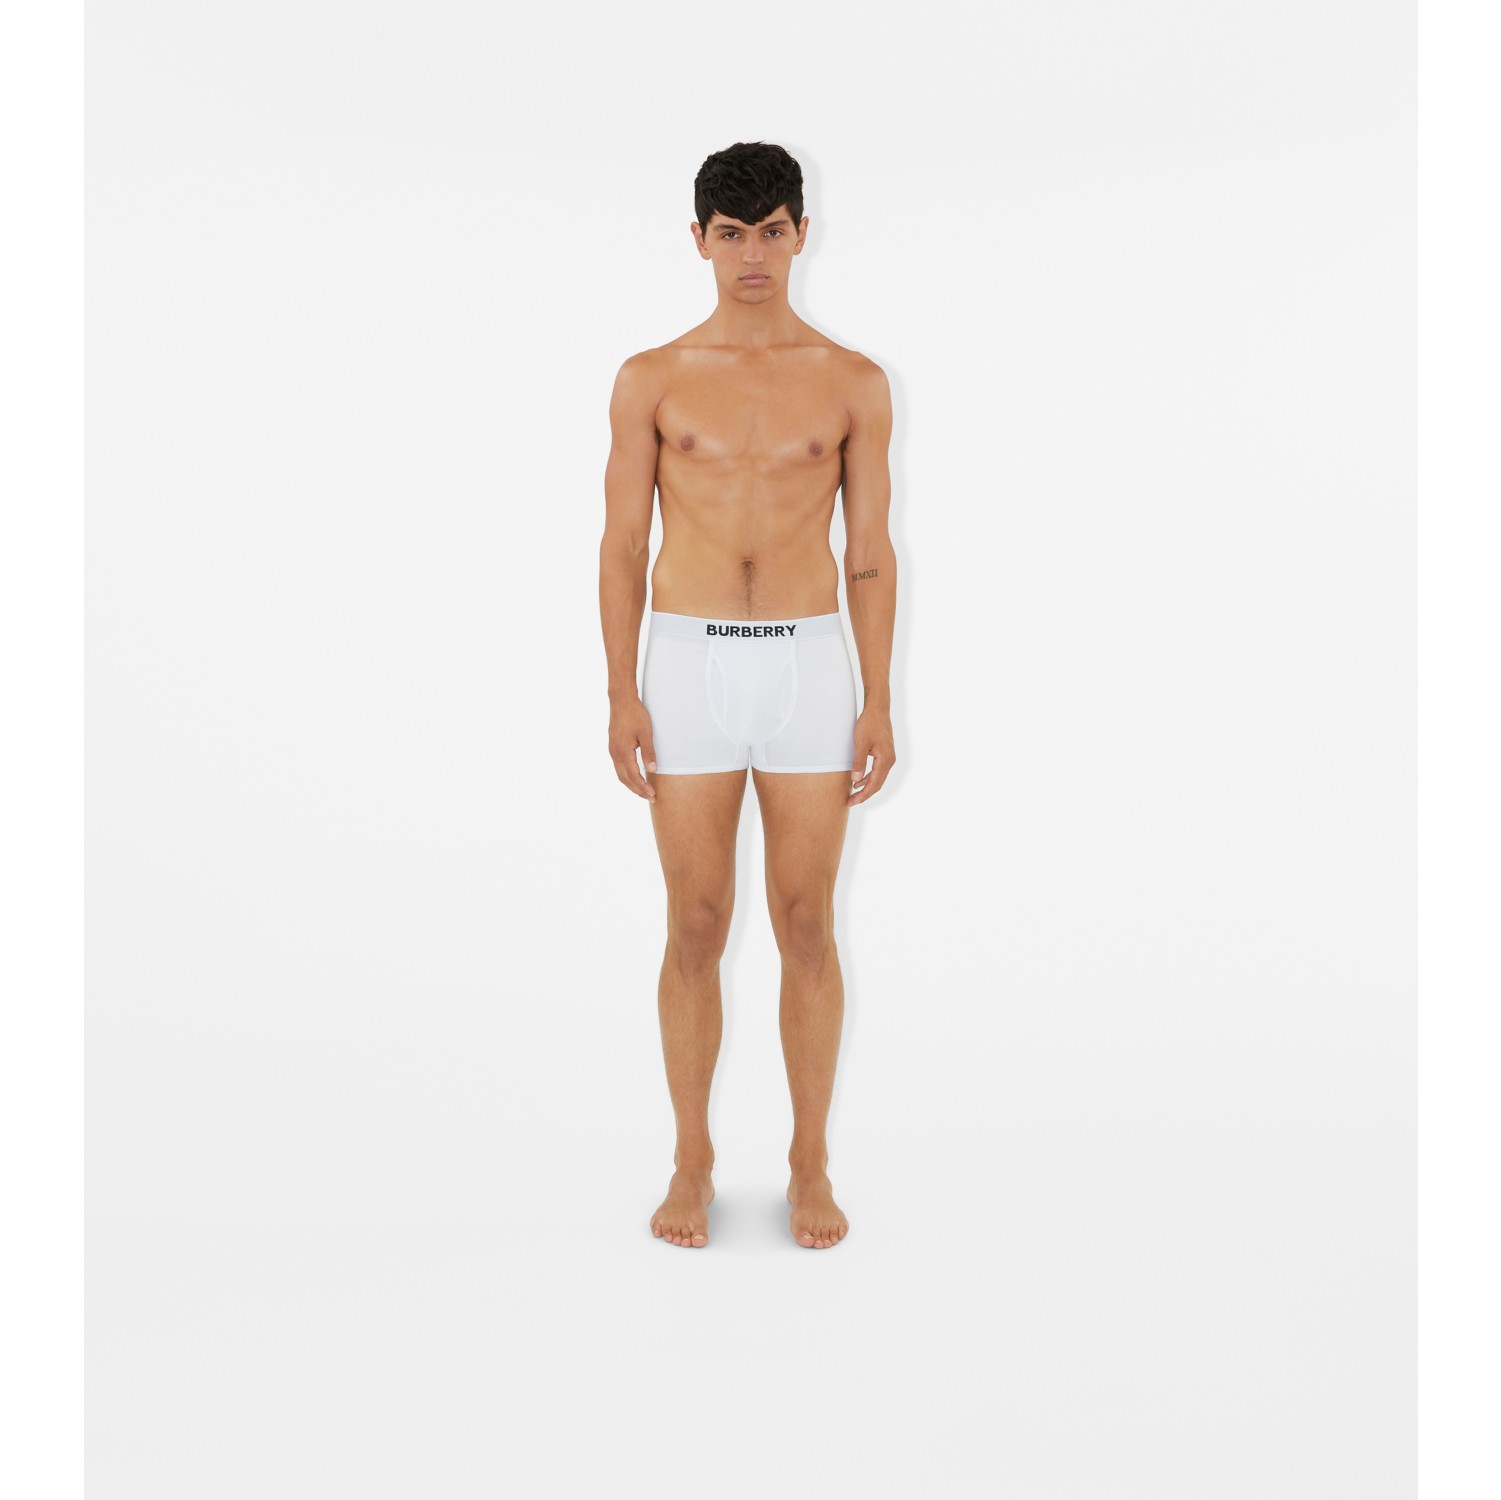 6Pcs Burberry Men's Underwear Cotton Boxer Shorts mix colors 04